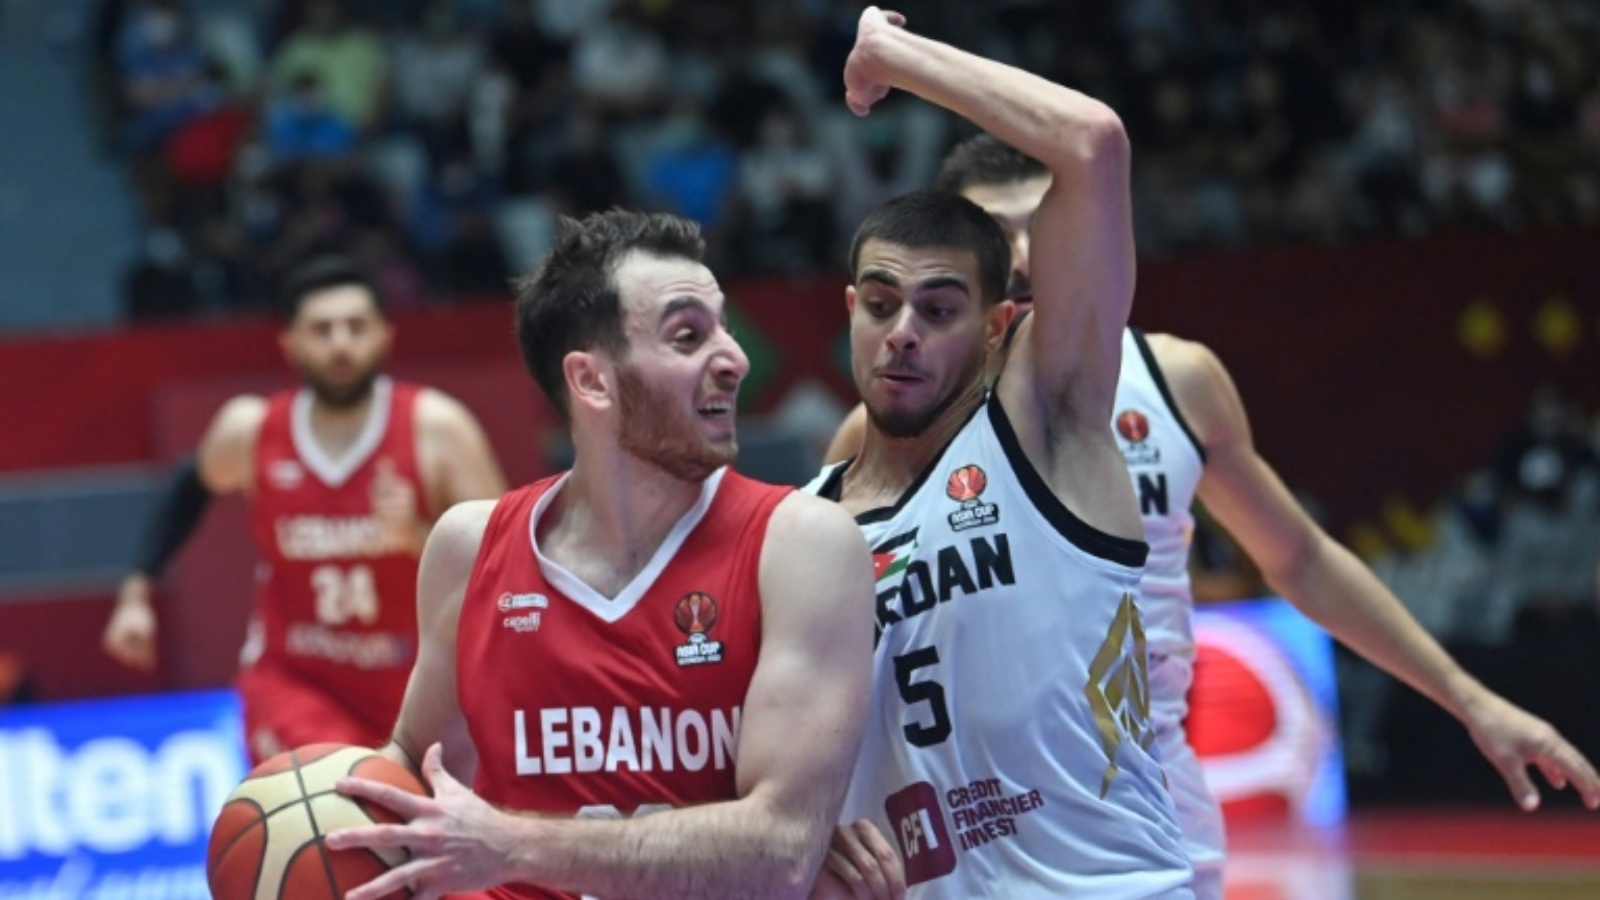 اللبناني وائل عرقجي (يسار) خلال محاولة الاختراق أمام الأردني فريدي إبراهيم (يمين) في مباراة نصف نهائي كأس آسيا لكرة السلة. جاكرتا في 23 يوليو 2022